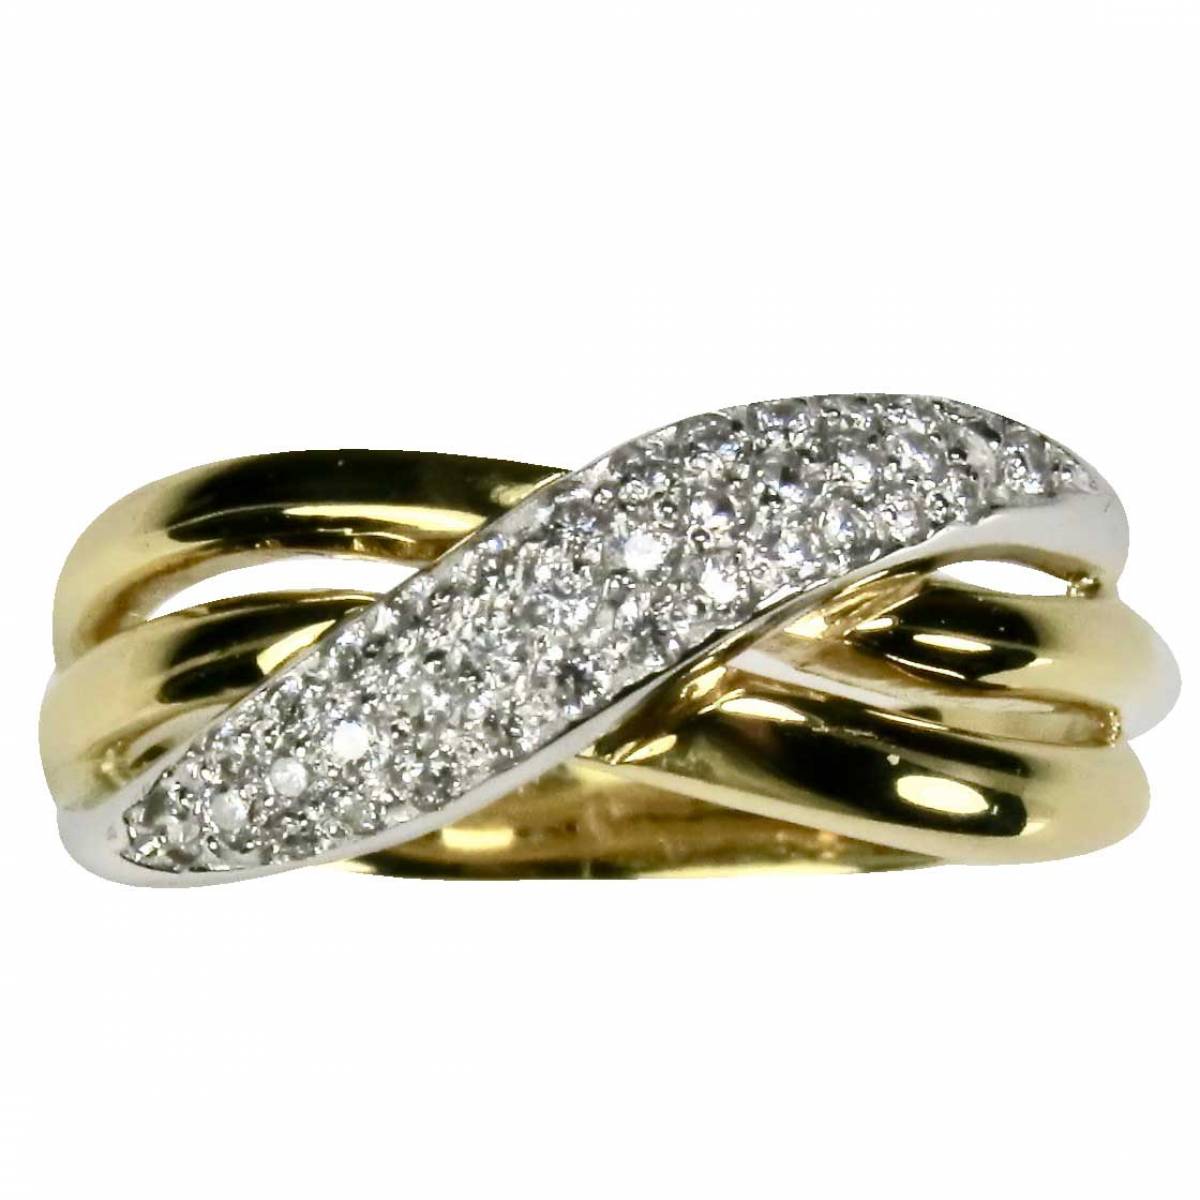 Anel de Noivado ouro bicolor de 9 e 19,2 kts, c/ diamantes ou zircónias